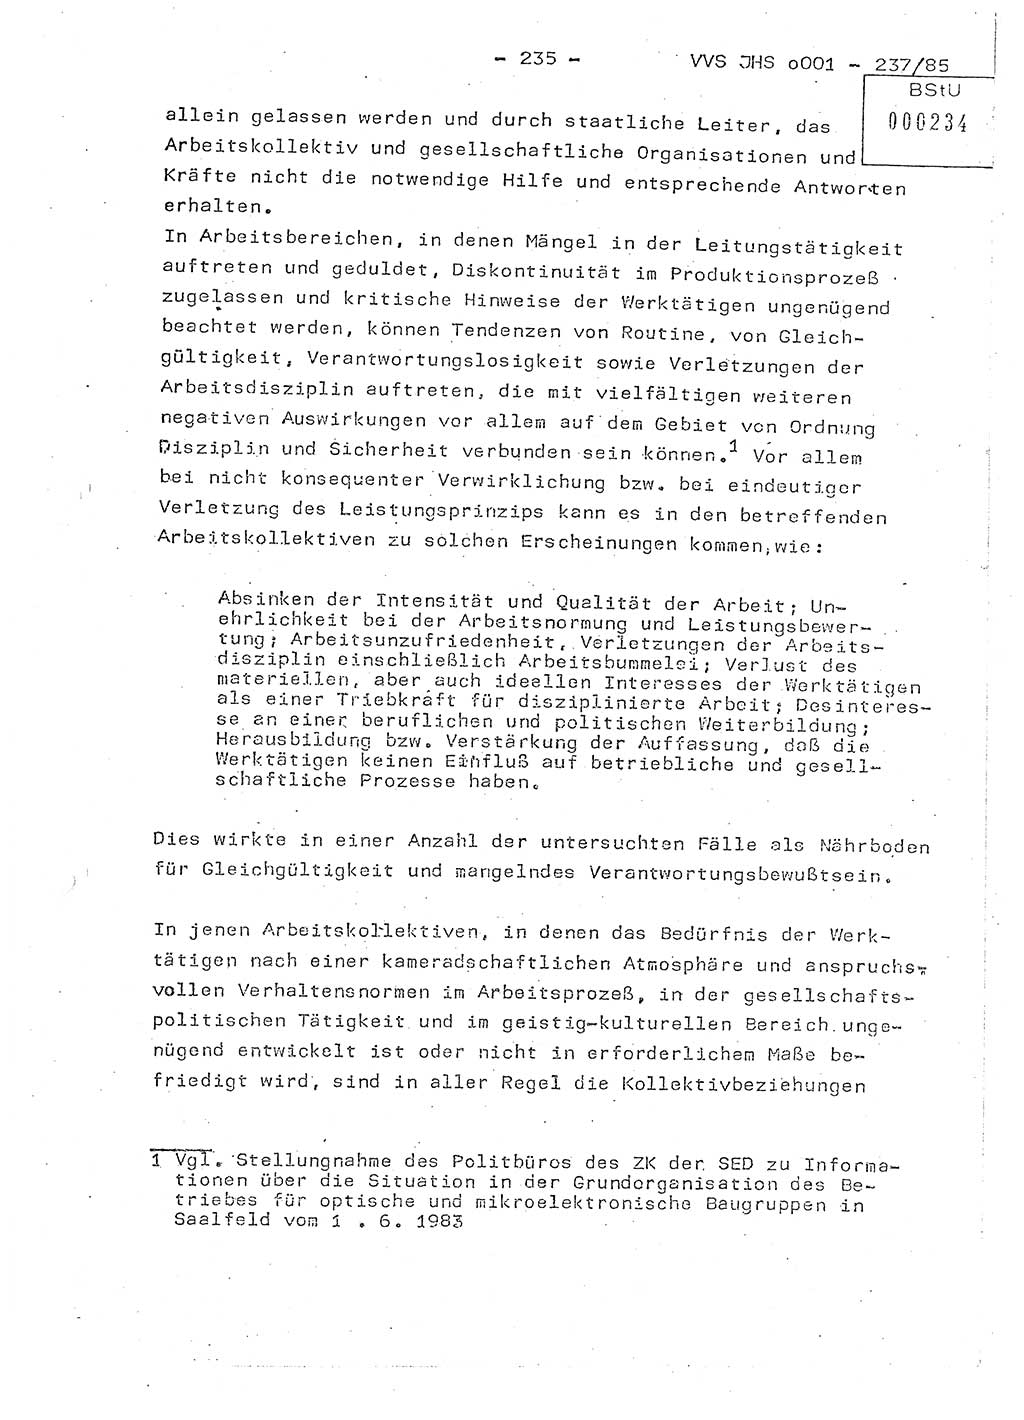 Dissertation Oberstleutnant Peter Jakulski (JHS), Oberstleutnat Christian Rudolph (HA Ⅸ), Major Horst Böttger (ZMD), Major Wolfgang Grüneberg (JHS), Major Albert Meutsch (JHS), Ministerium für Staatssicherheit (MfS) [Deutsche Demokratische Republik (DDR)], Juristische Hochschule (JHS), Vertrauliche Verschlußsache (VVS) o001-237/85, Potsdam 1985, Seite 235 (Diss. MfS DDR JHS VVS o001-237/85 1985, S. 235)